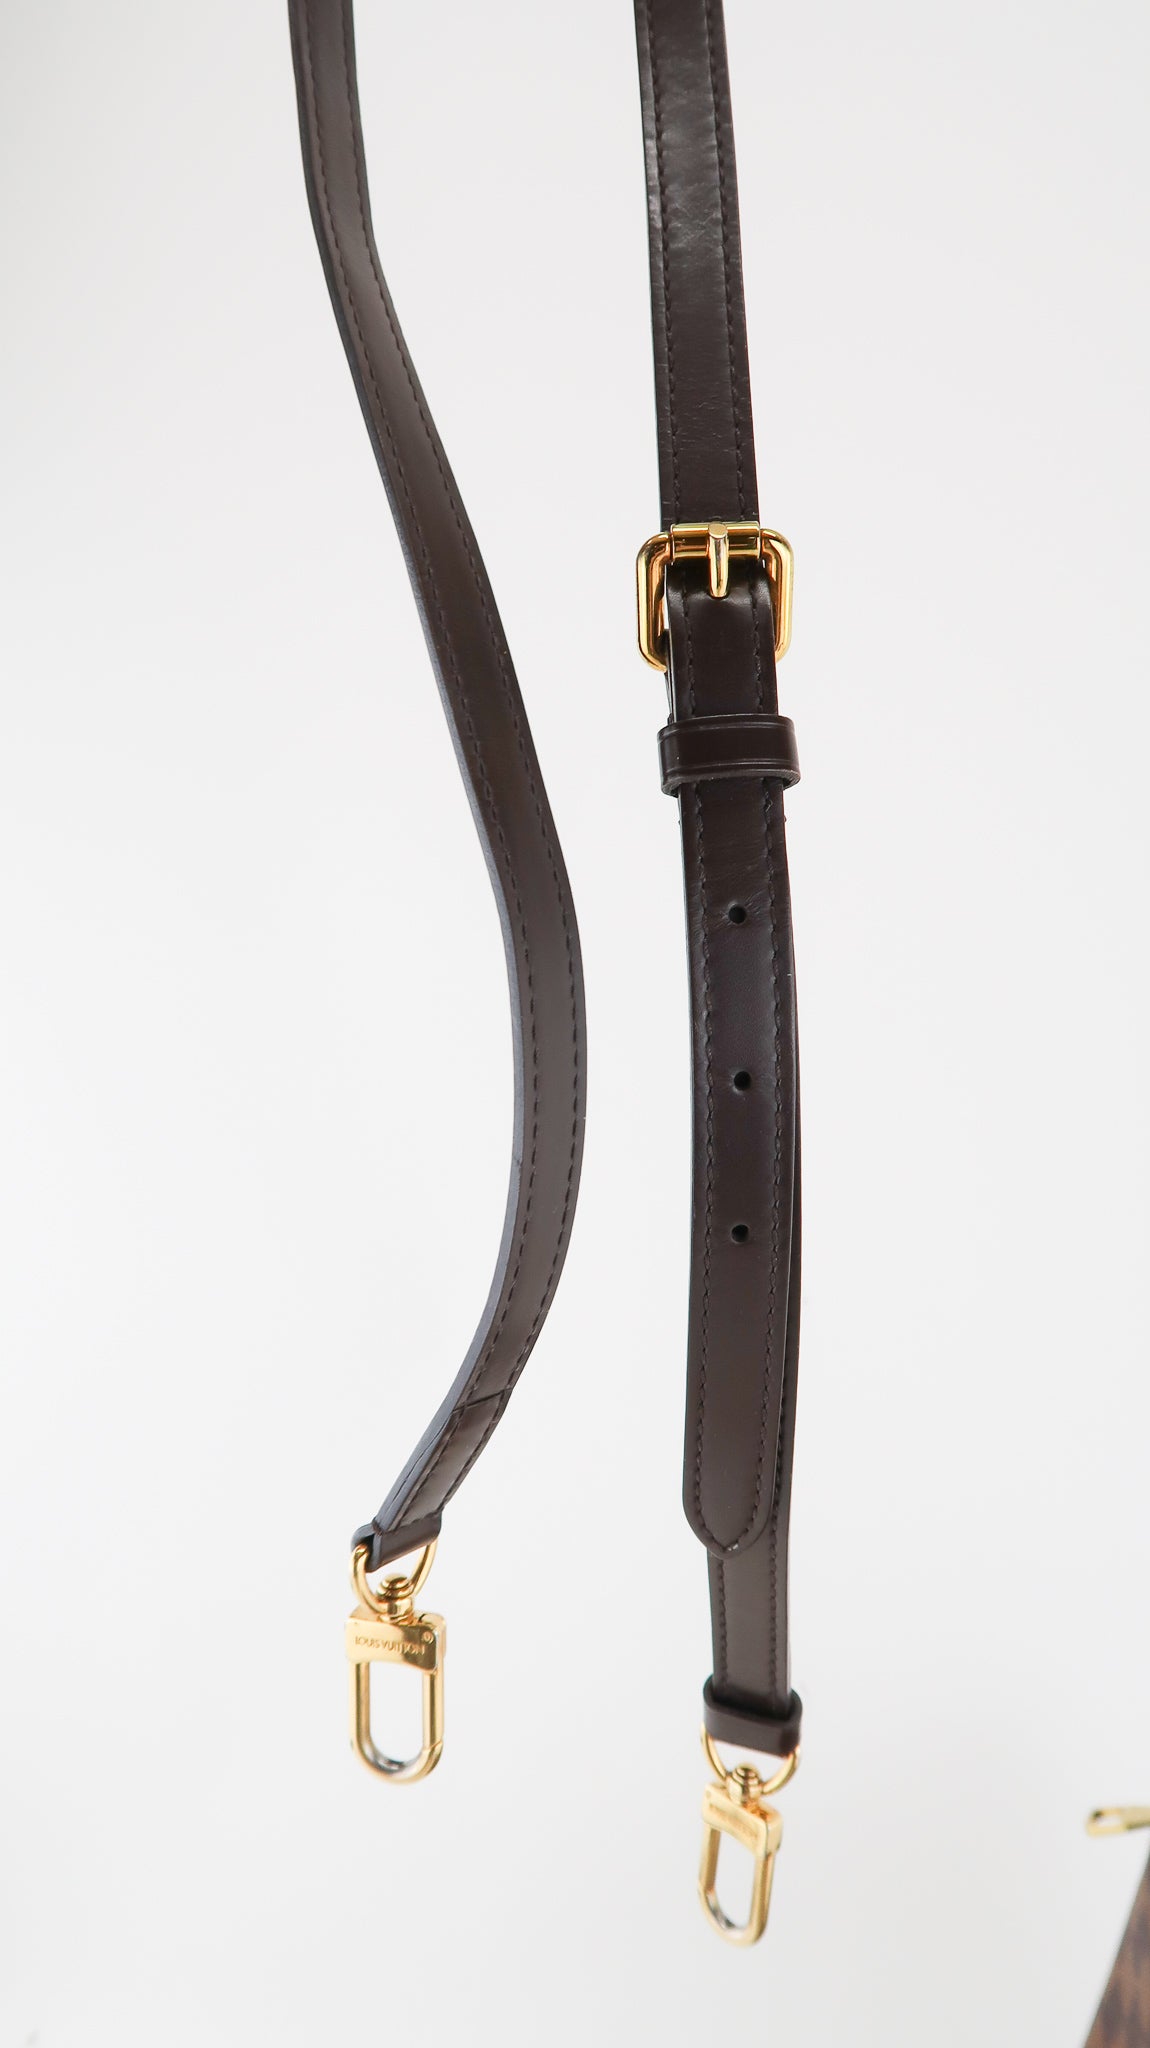 Louis Vuitton Adjustable Shoulder Strap 12mm in Damier Ebene - SOLD